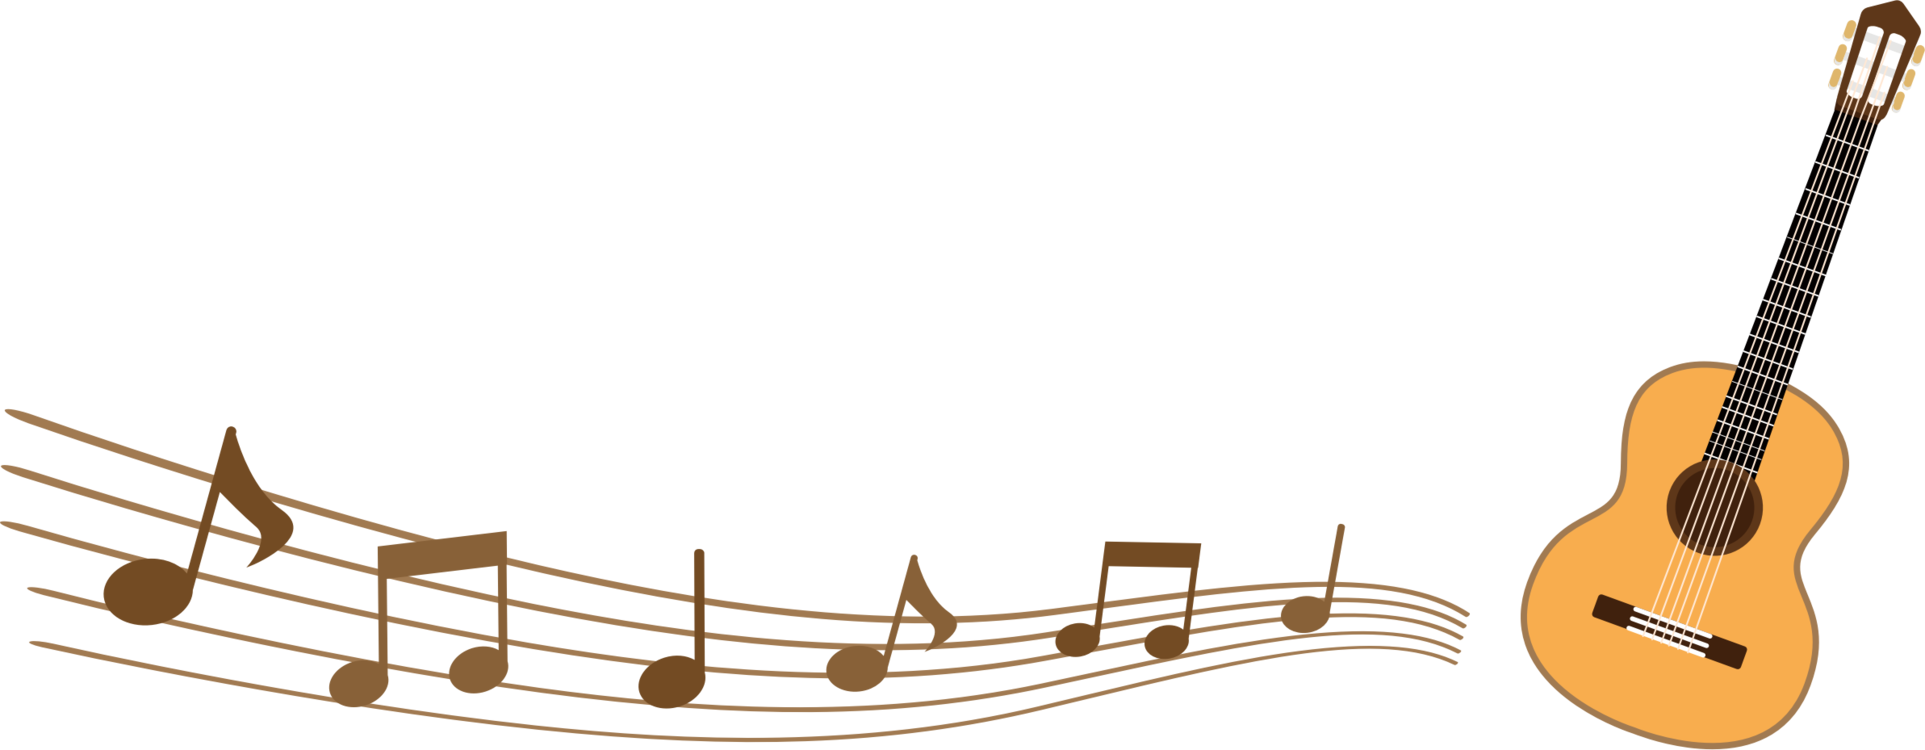 Cuatro,Tiple,Musical Instrument